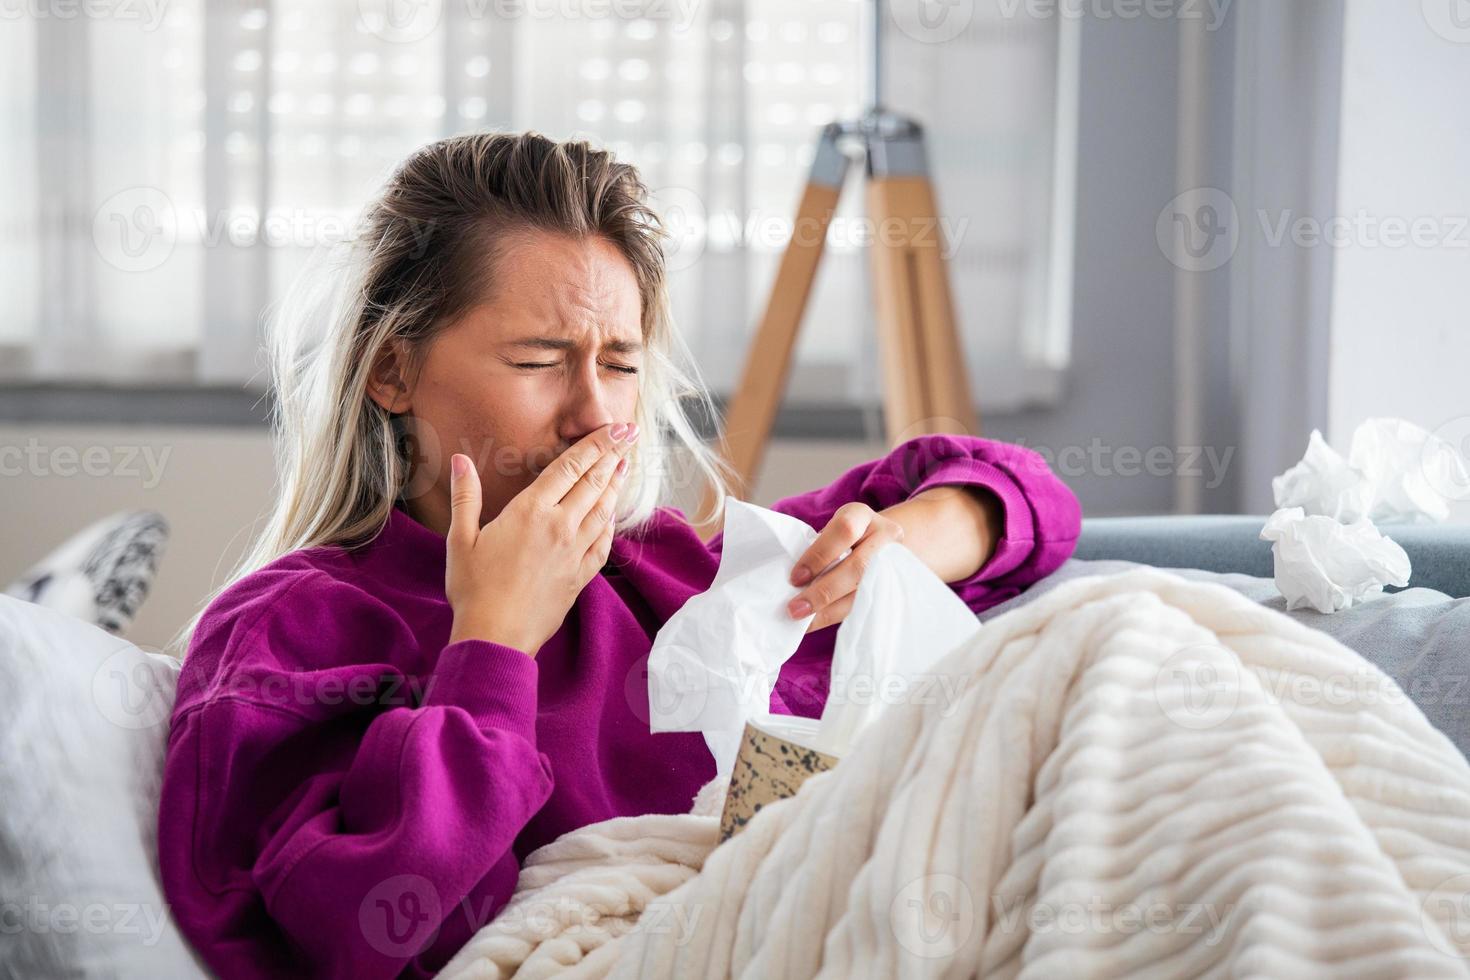 una mujer enferma y desesperada tiene gripe. rinitis, resfriado, enfermedad, concepto de alergia. una mujer bastante enferma tiene secreción nasal, se frota la nariz con un pañuelo. mujer estornudando. morena estornudando en un pañuelo foto